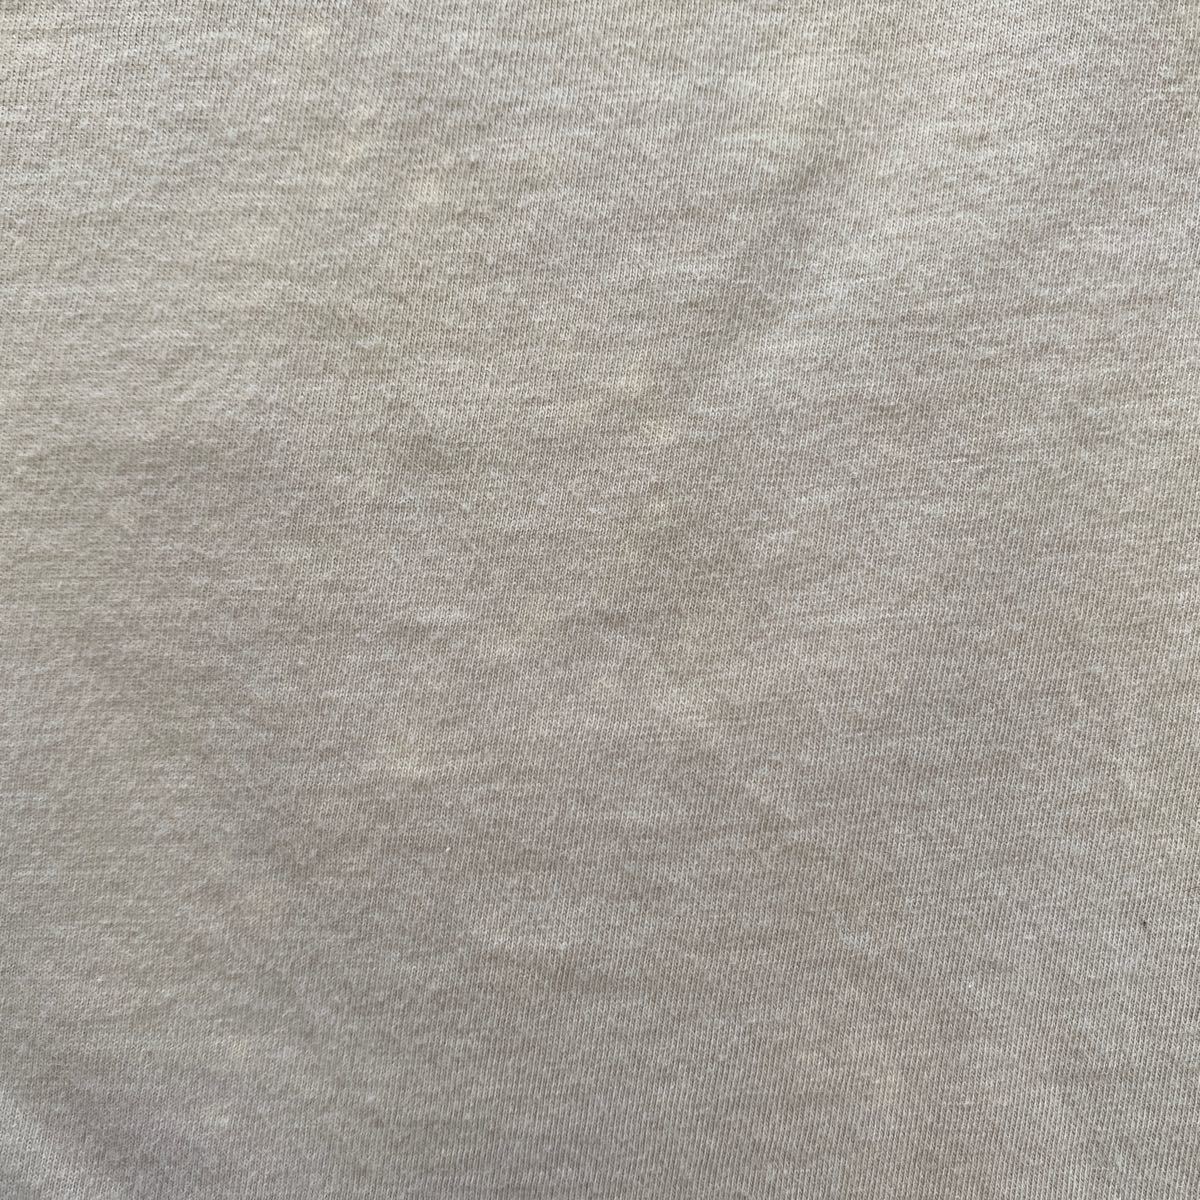 パタゴニア メンズ コットン Tシャツ S 半袖 茶色 ベージュ キャメル色